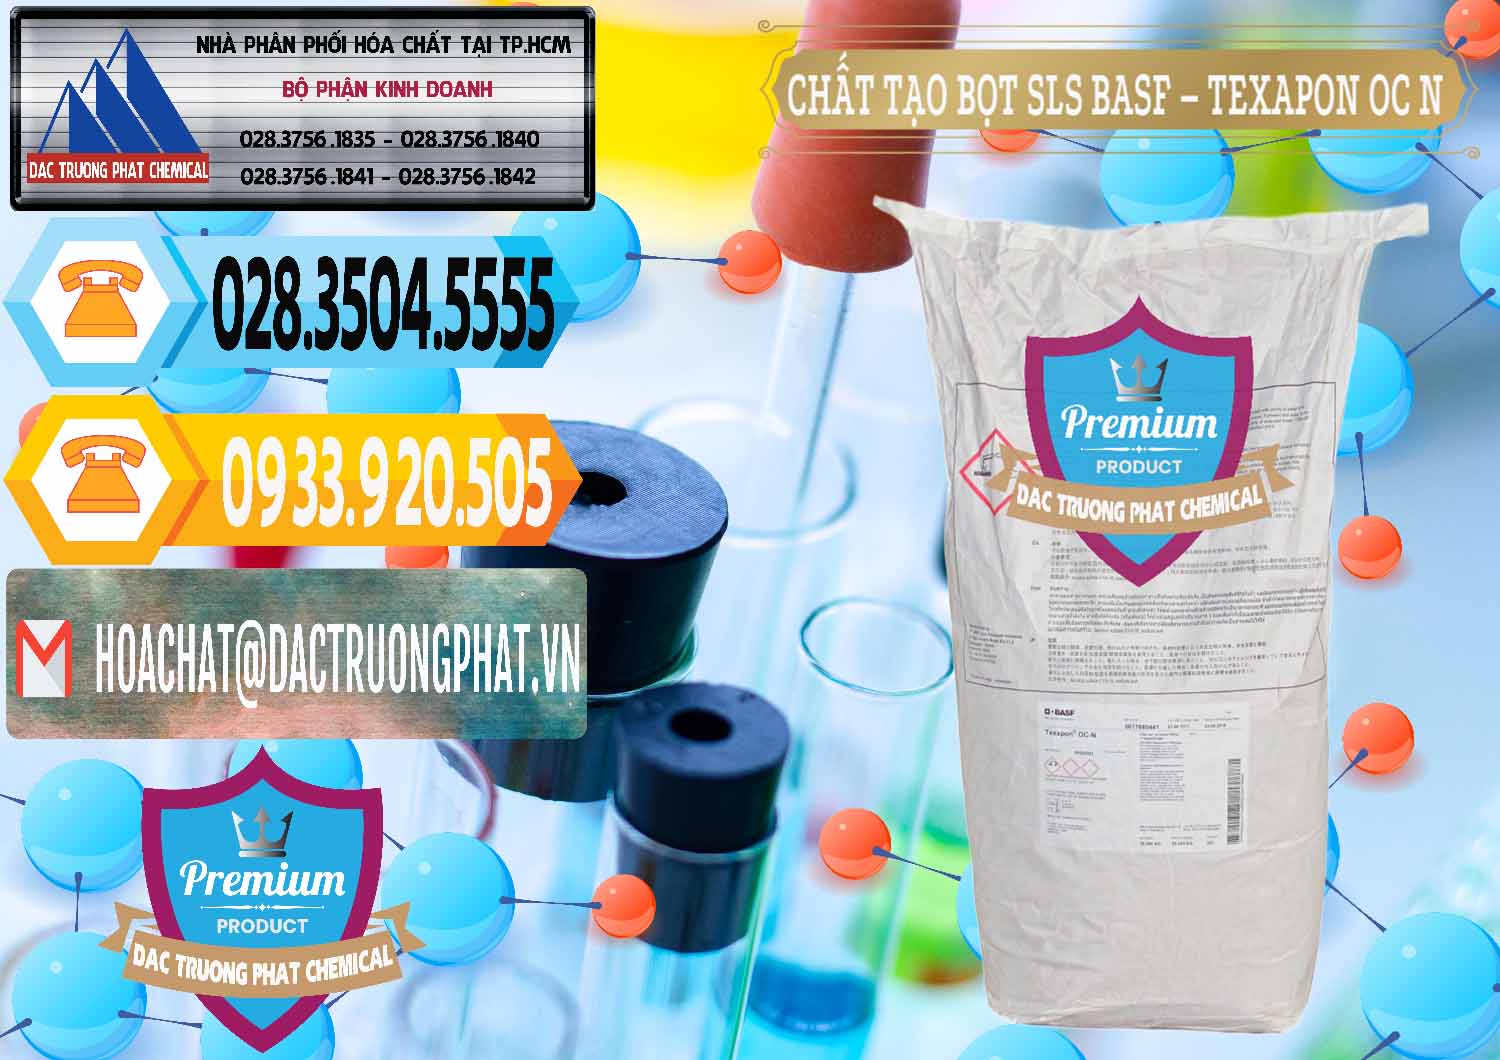 Cty chuyên cung cấp và bán Chất Tạo Bọt SLS - Sodium Lauryl Sulfate BASF Texapon OC N - 0049 - Nơi nhập khẩu và cung cấp hóa chất tại TP.HCM - hoachattayrua.net